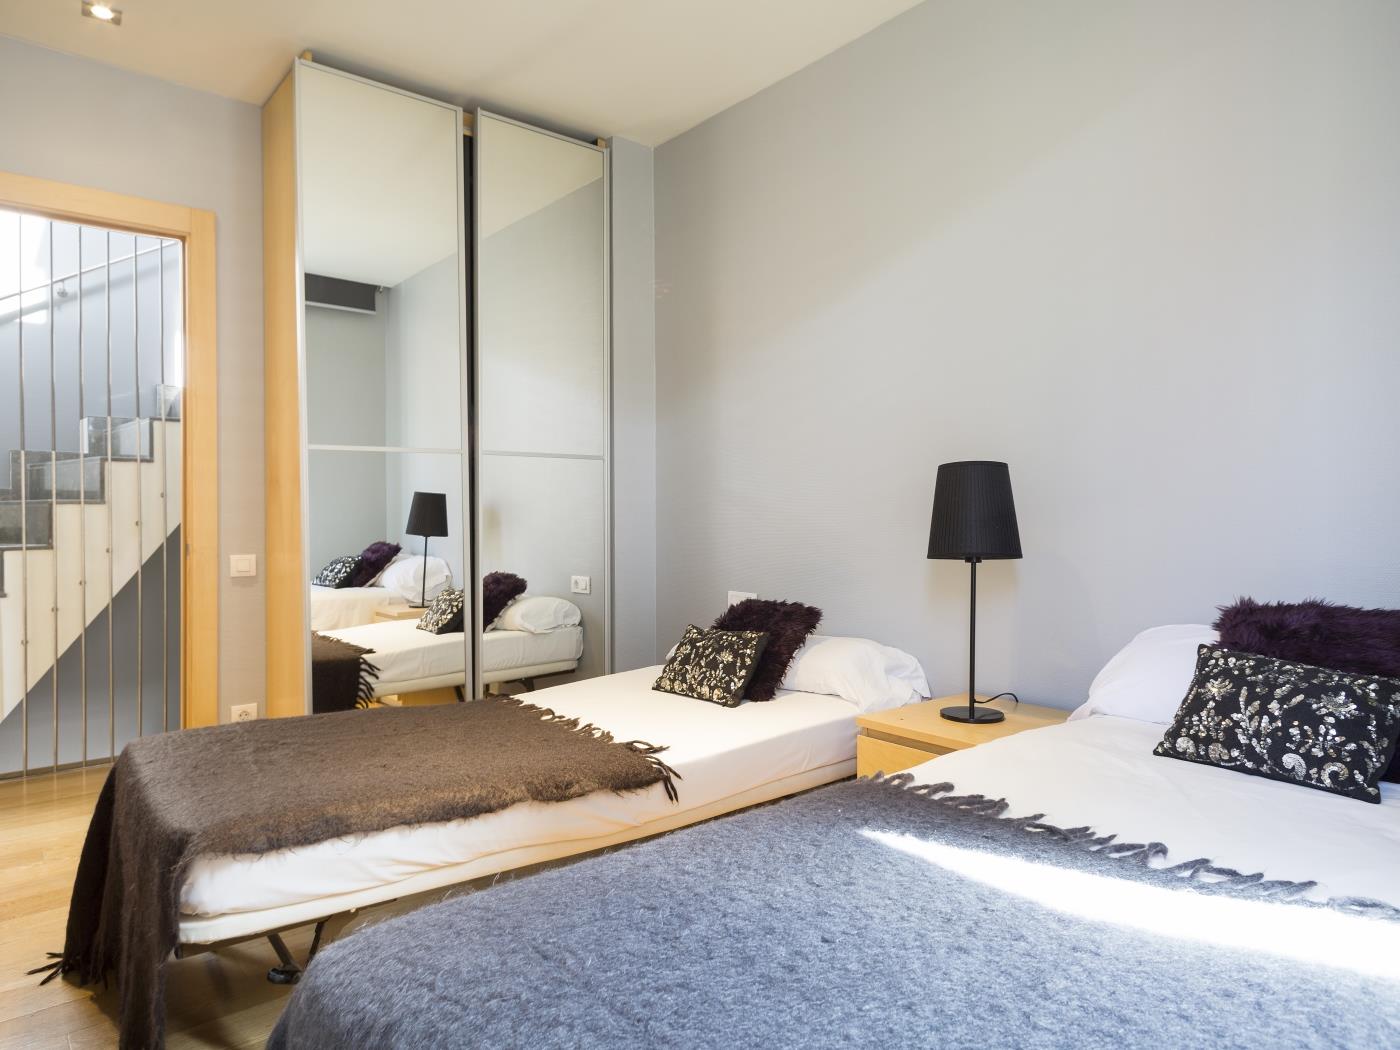 شرفة خاصة وحمام سباحة شقة - My Space Barcelona شقة